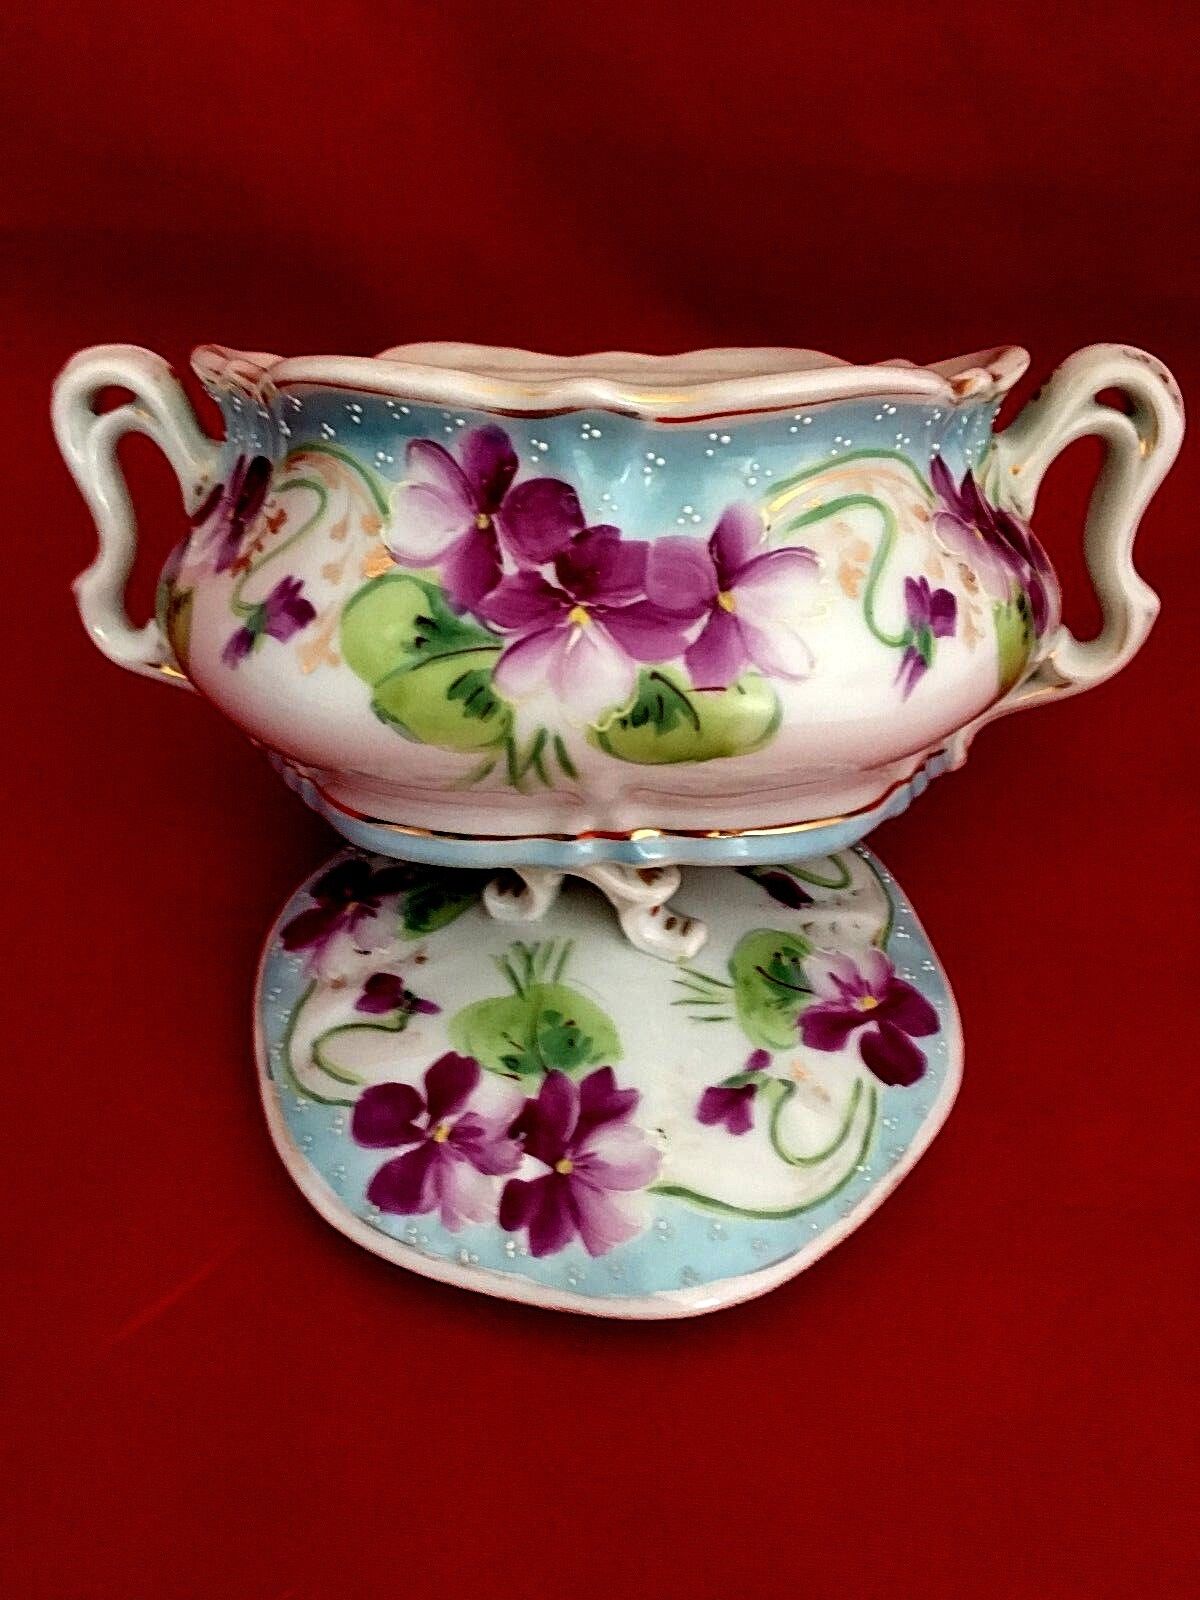 Antique Nippon Bowl Lidded with under plate cobalt edged floral violets design Без бренда - фотография #7